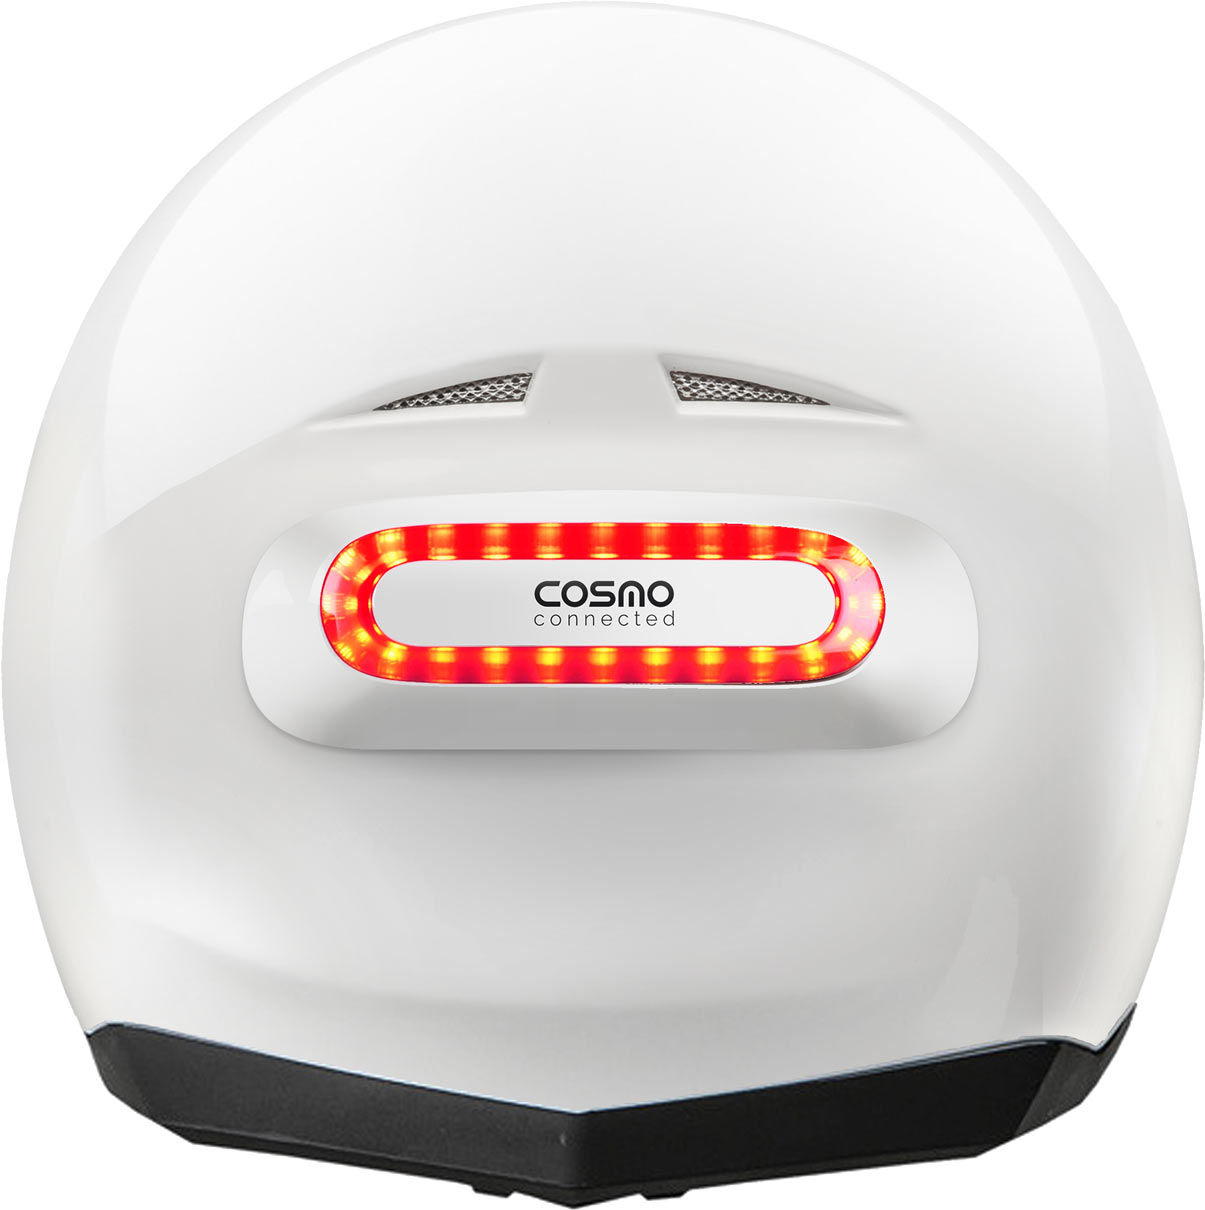 Le Cosmo Connected se monte sur n'importe quel casque intégral ou jet